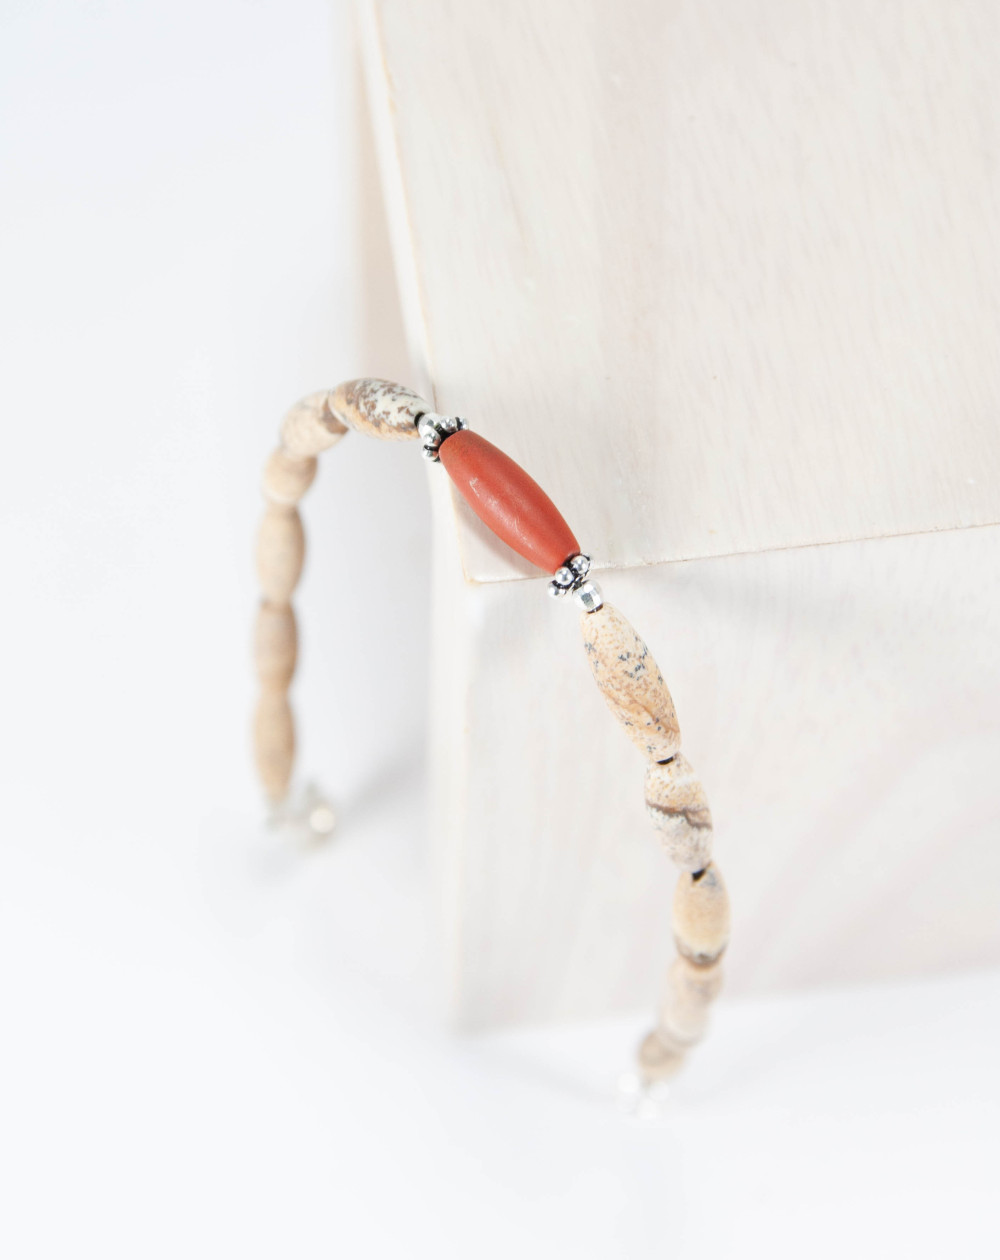 Bracelet en Jaspe Paysage et Jaspe Rouge, câble d'acier gainé, Sanùk Création, Créateurs Bijoutiers Pays Basque